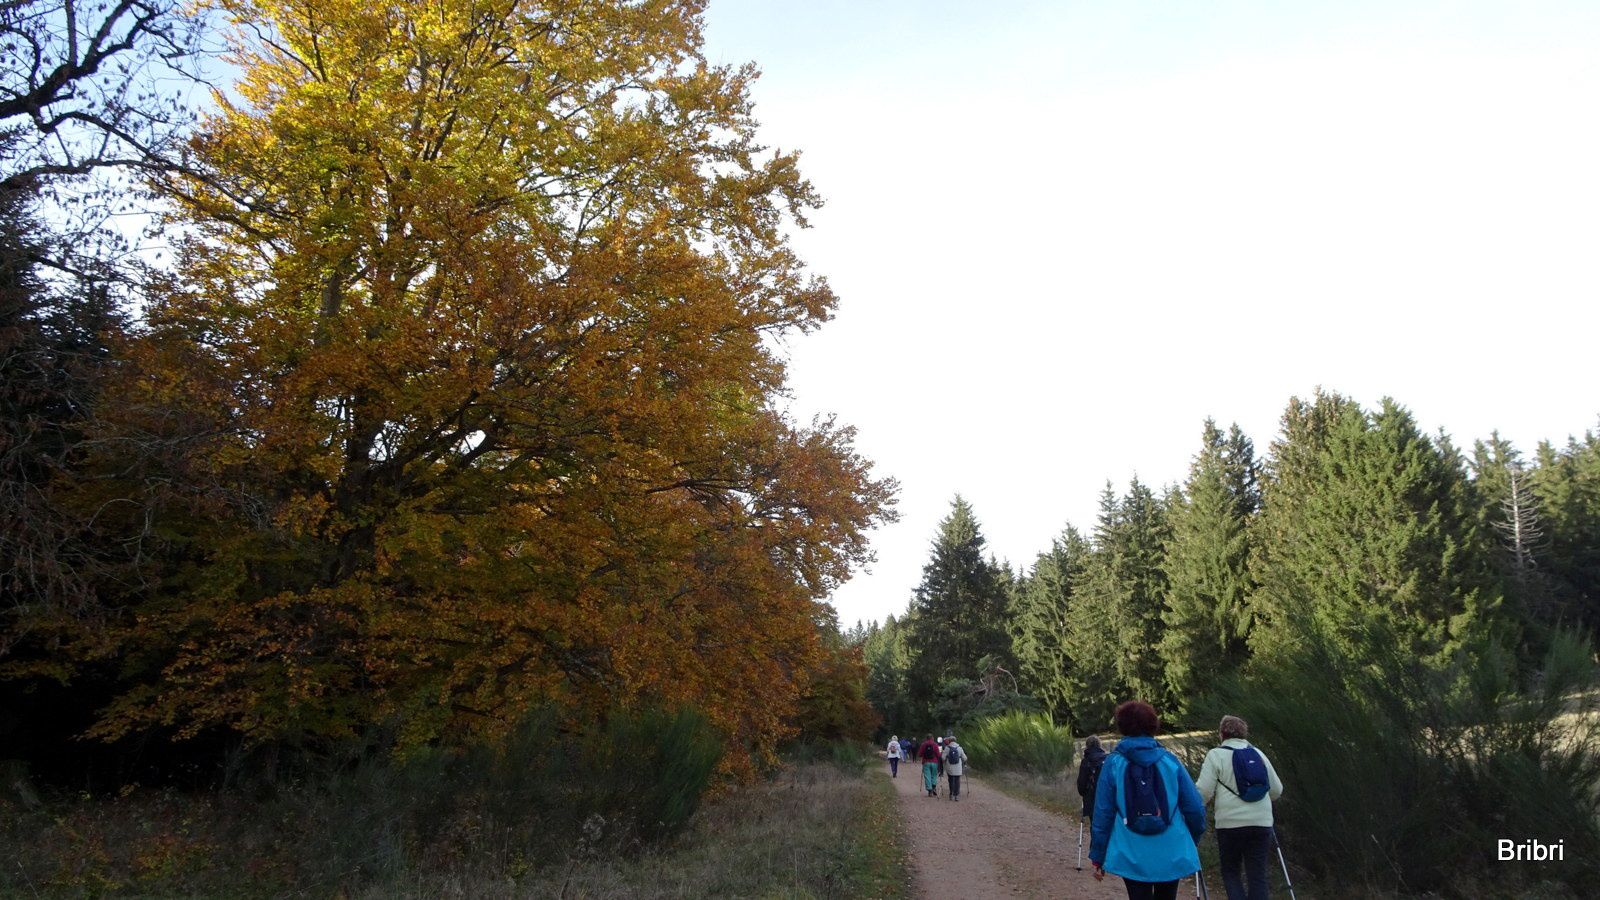 Ici aussi il y a des arbres abîmés, mais ils ont leurs superbes couleurs d'automne.